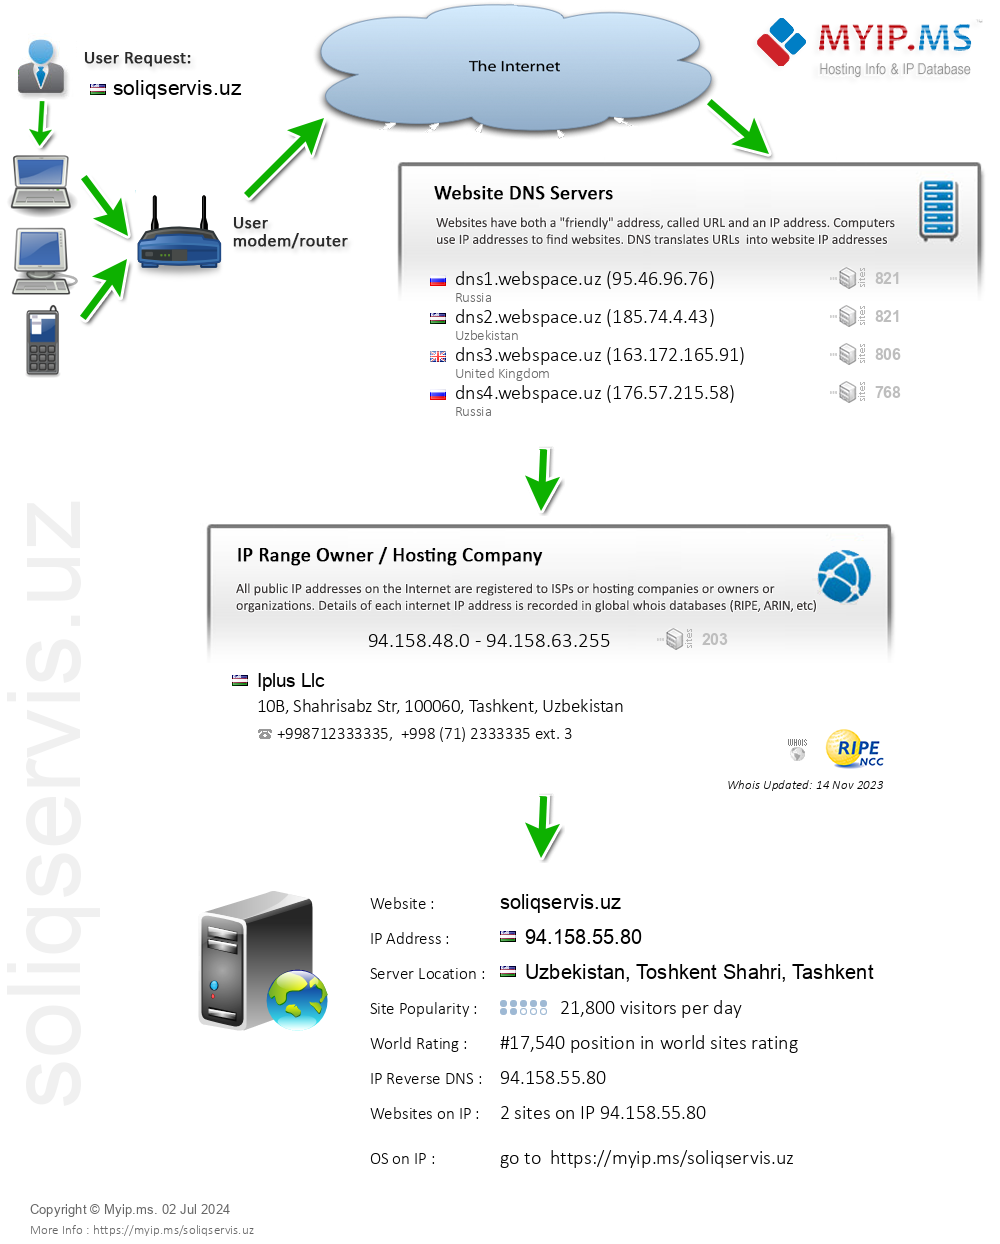 Soliqservis.uz - Website Hosting Visual IP Diagram